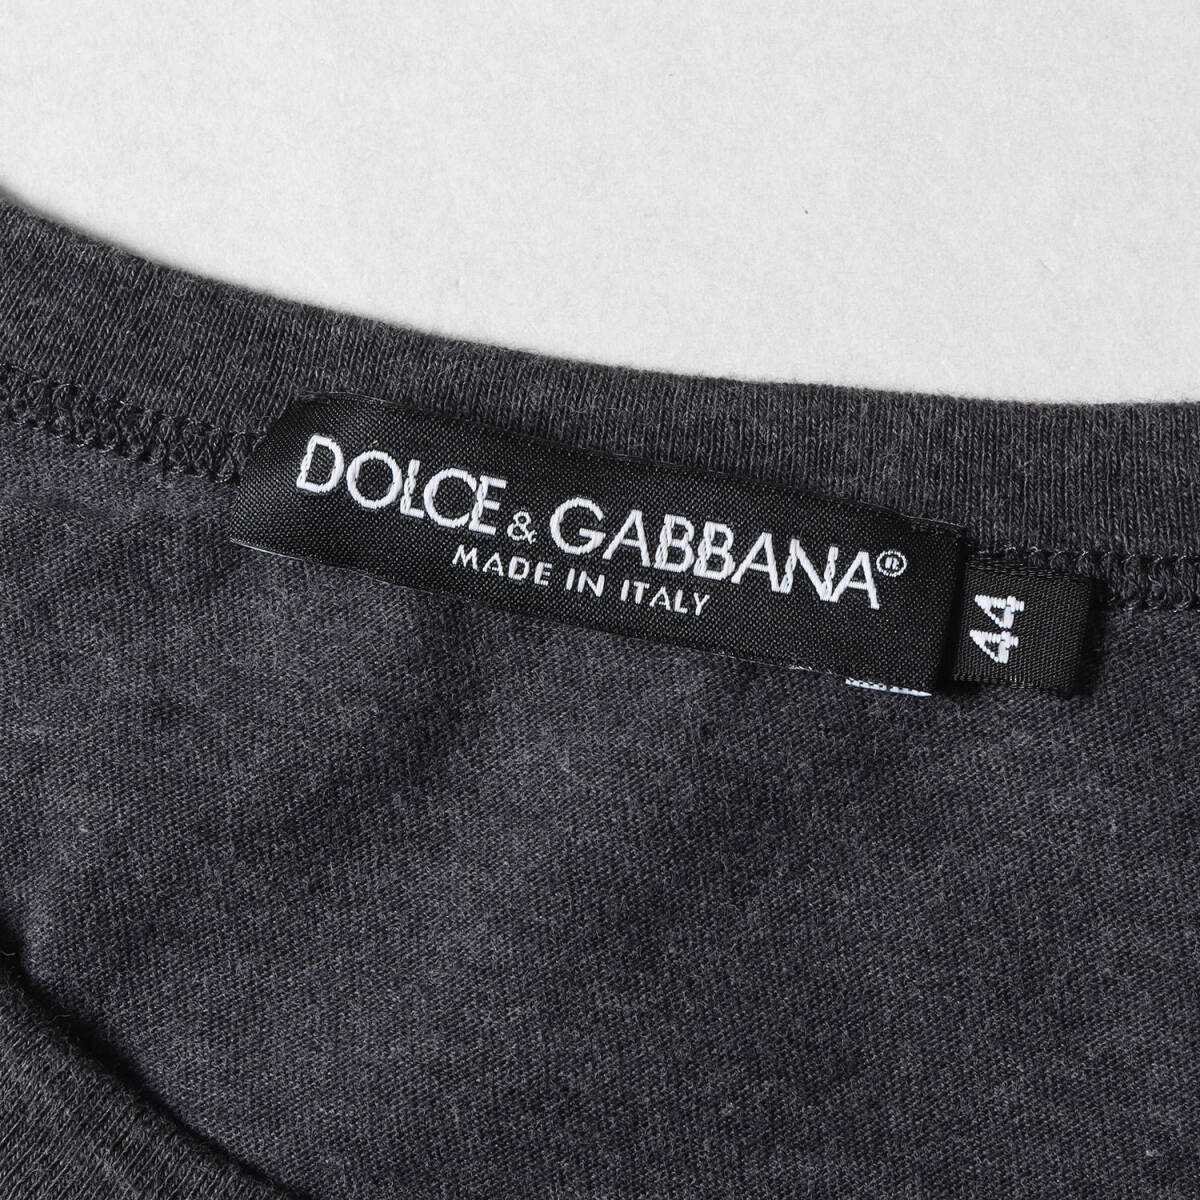 DOLCE&GABBANA ドルチェ&ガッバーナ Tシャツ サイズ:44 近年モデル ワンポイントビジュー モンキー リンガーTシャツ ダーク ネイビー_画像3